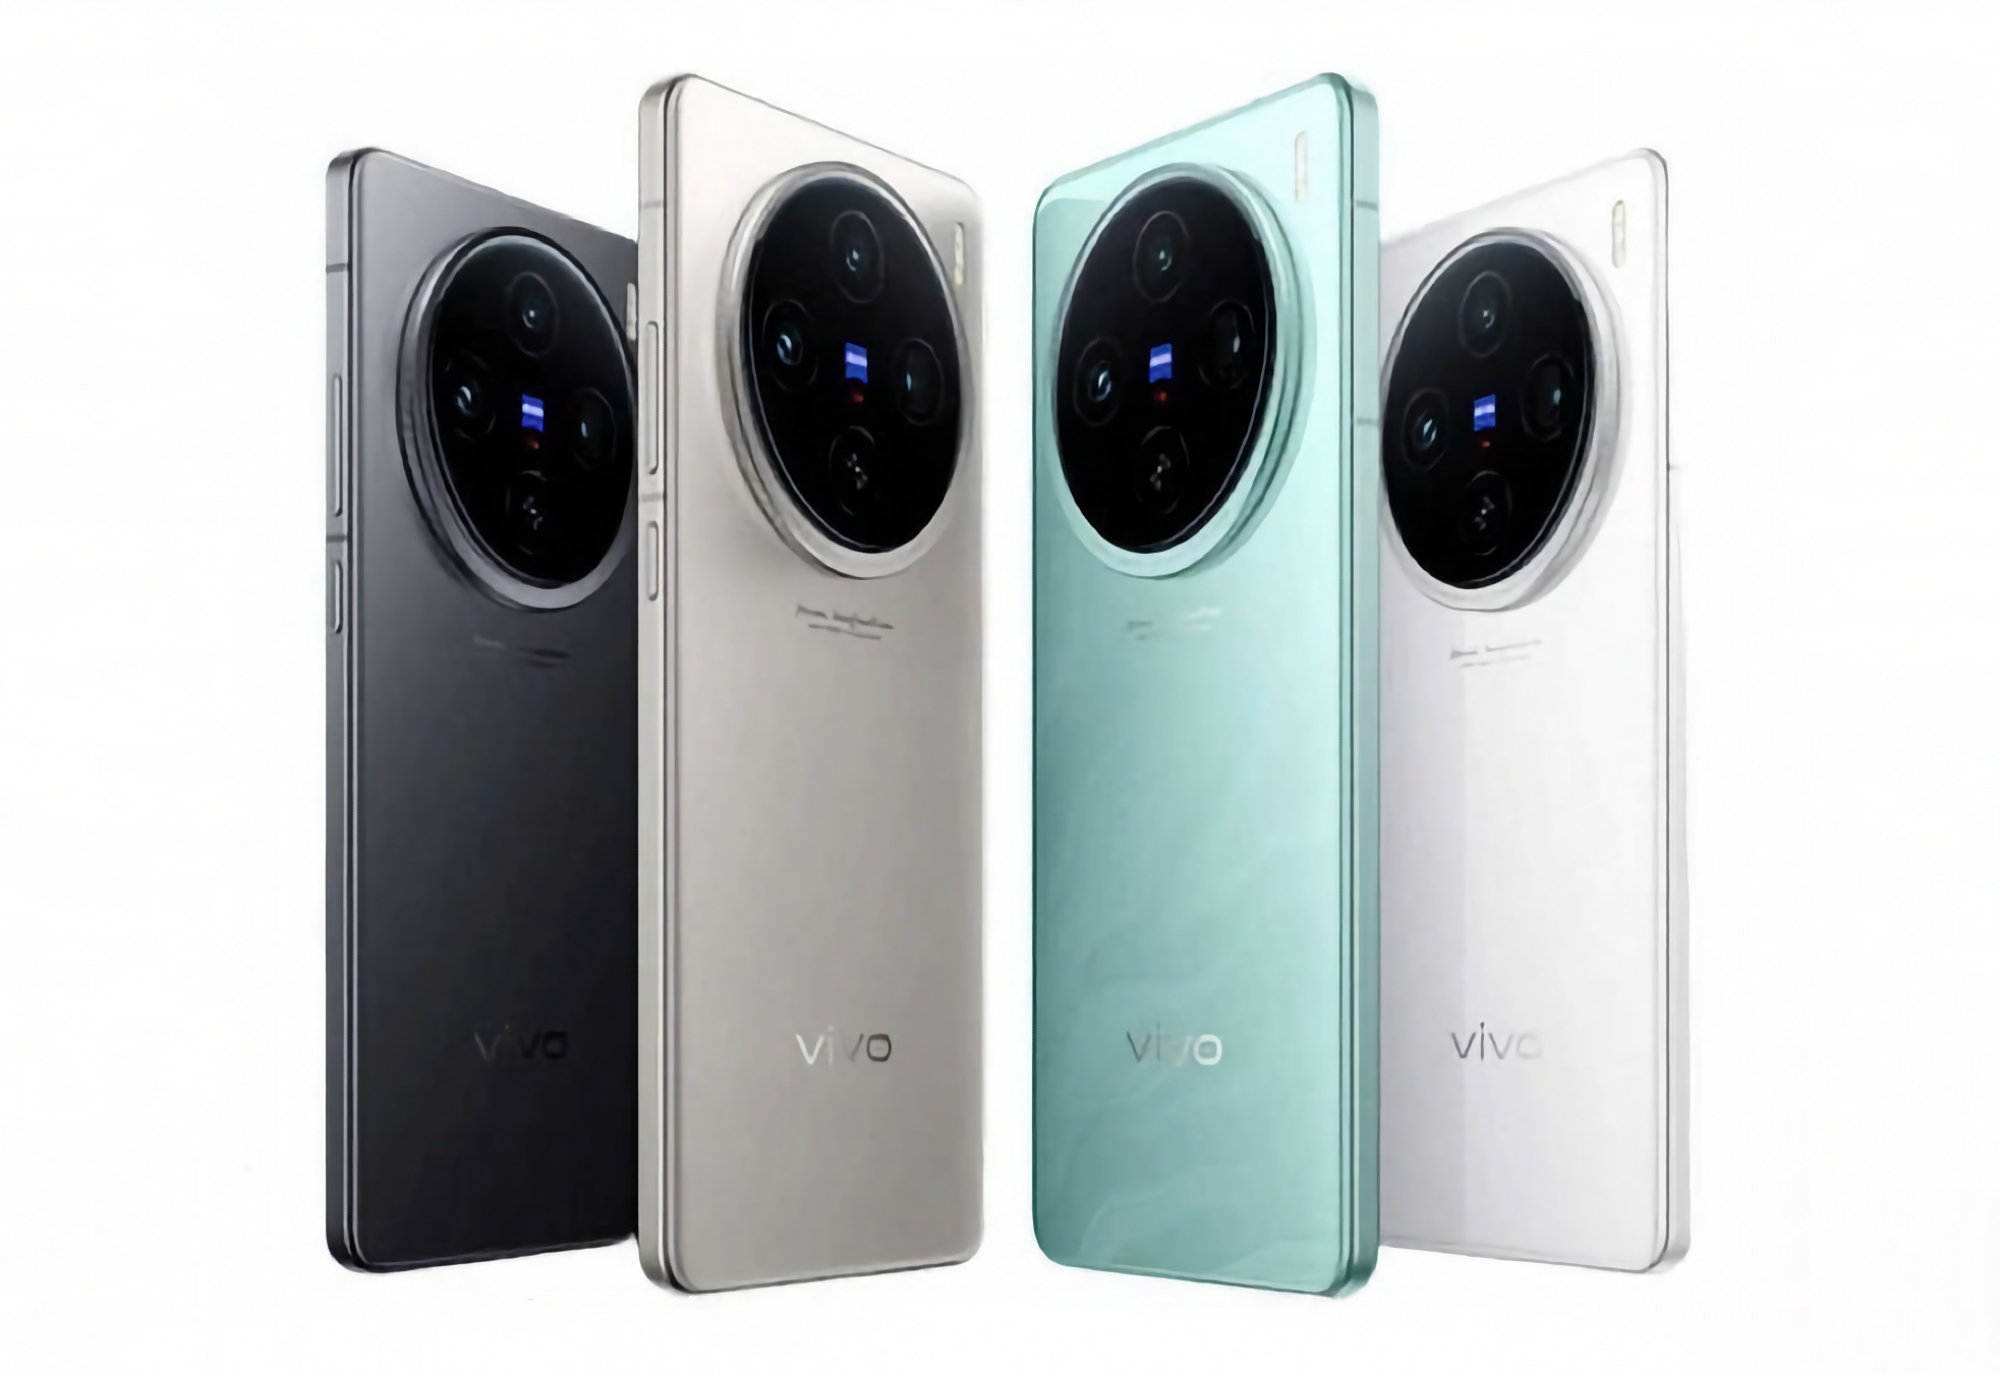 Wie viel werden die Smartphones vivo X100 Ultra, vivo X100s und vivo X100s Pro kosten?